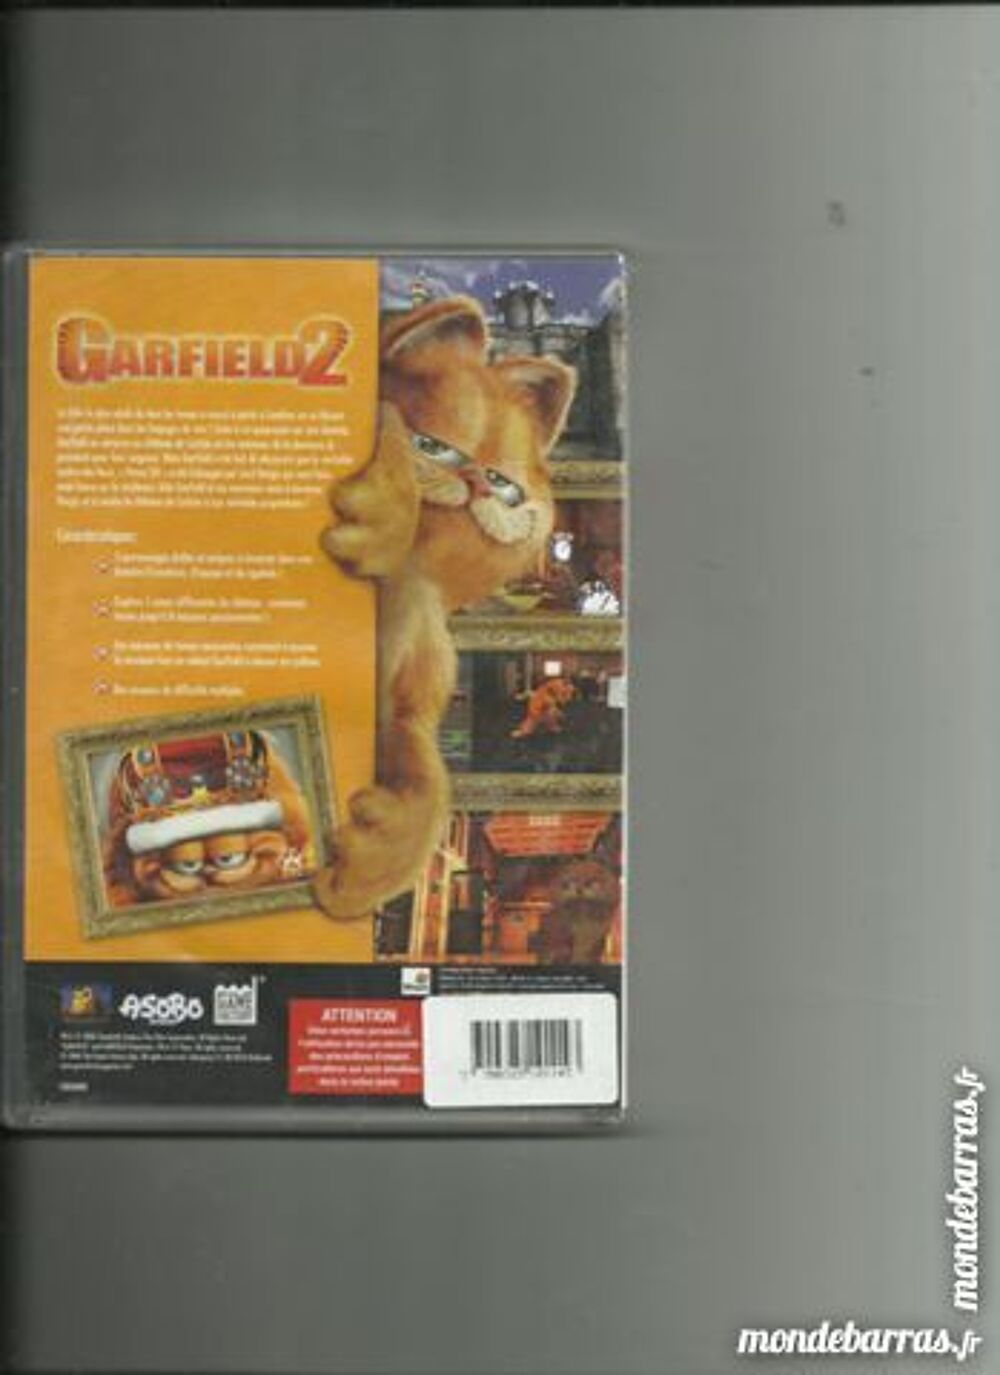 JEU PC GARFIELD 2 Consoles et jeux vidos